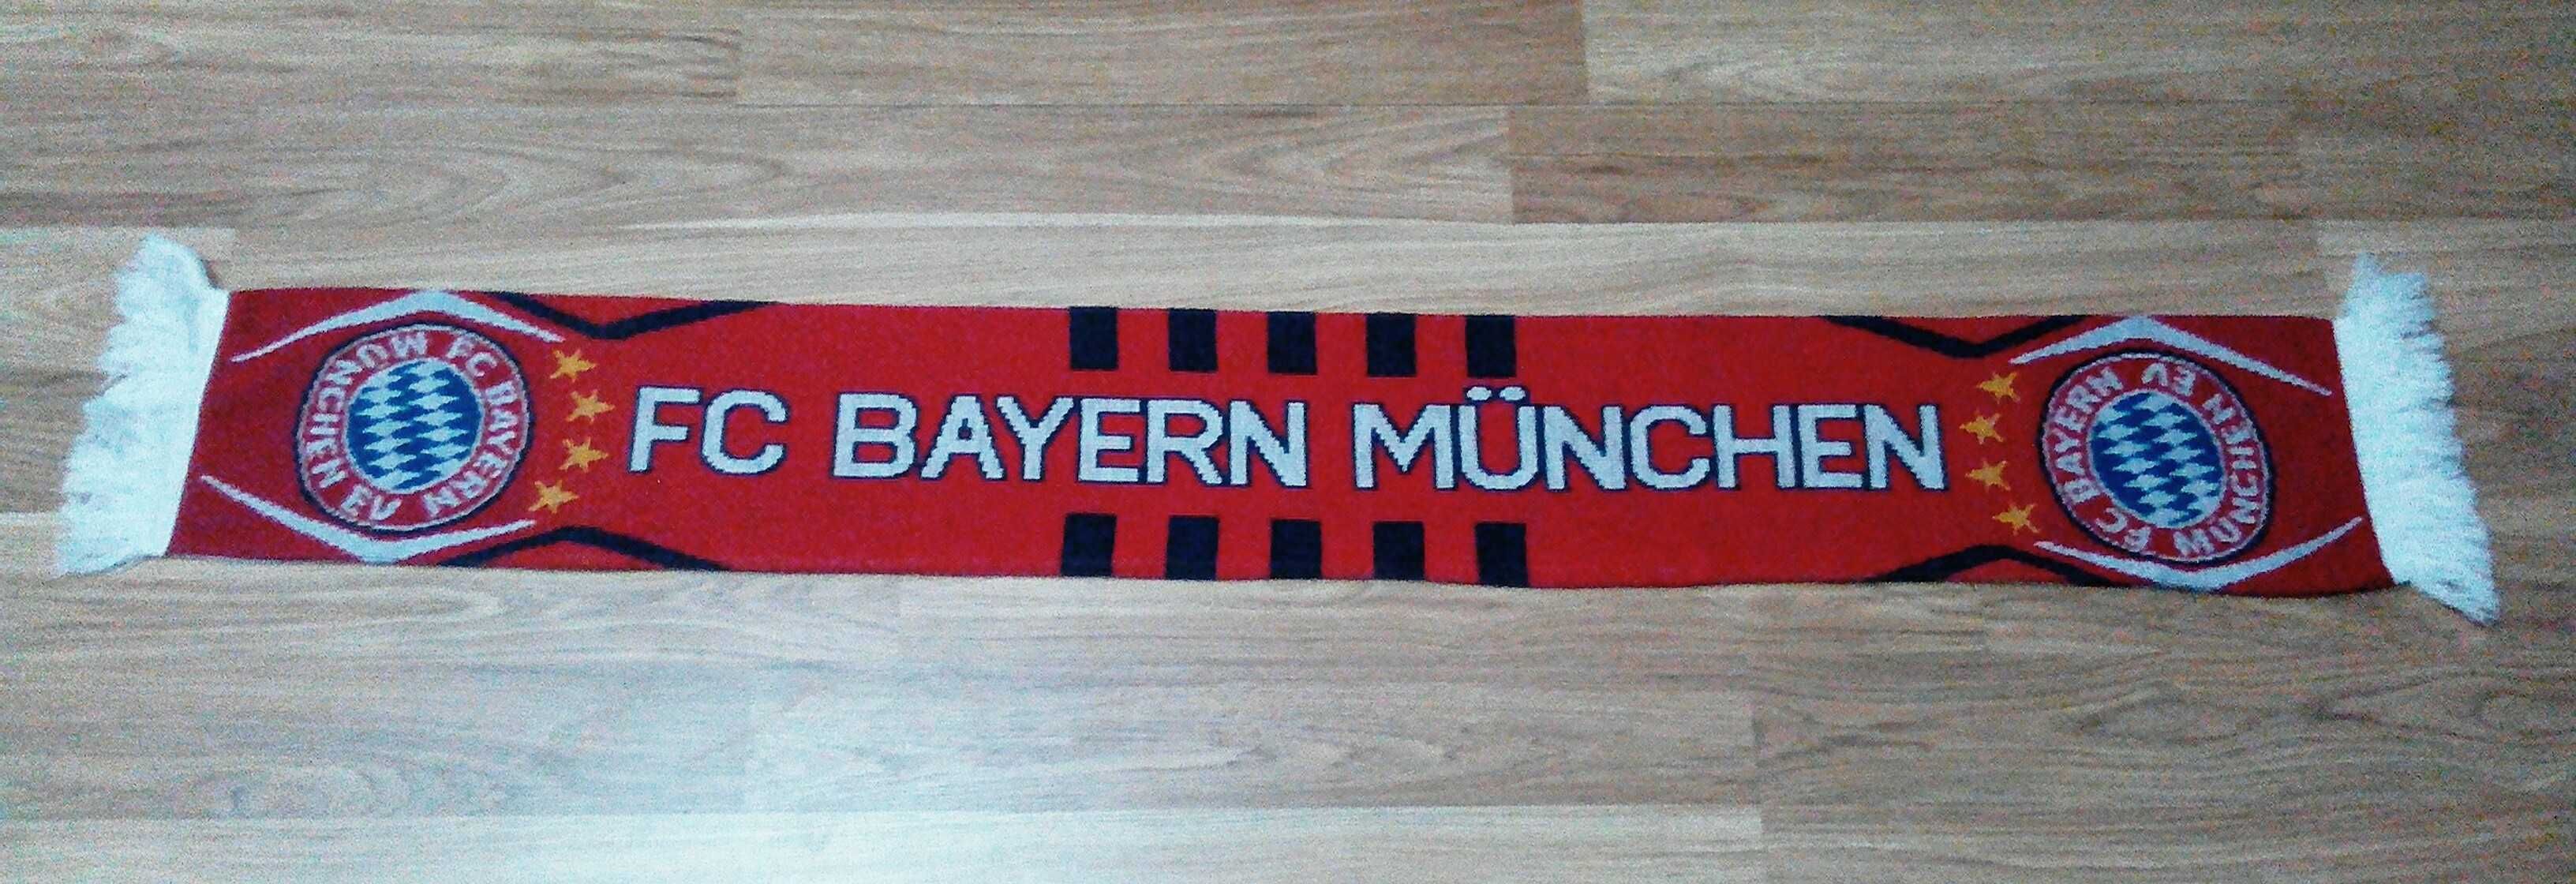 Баварія Мюнхен Чемпіон 2005 футболка коллекційна